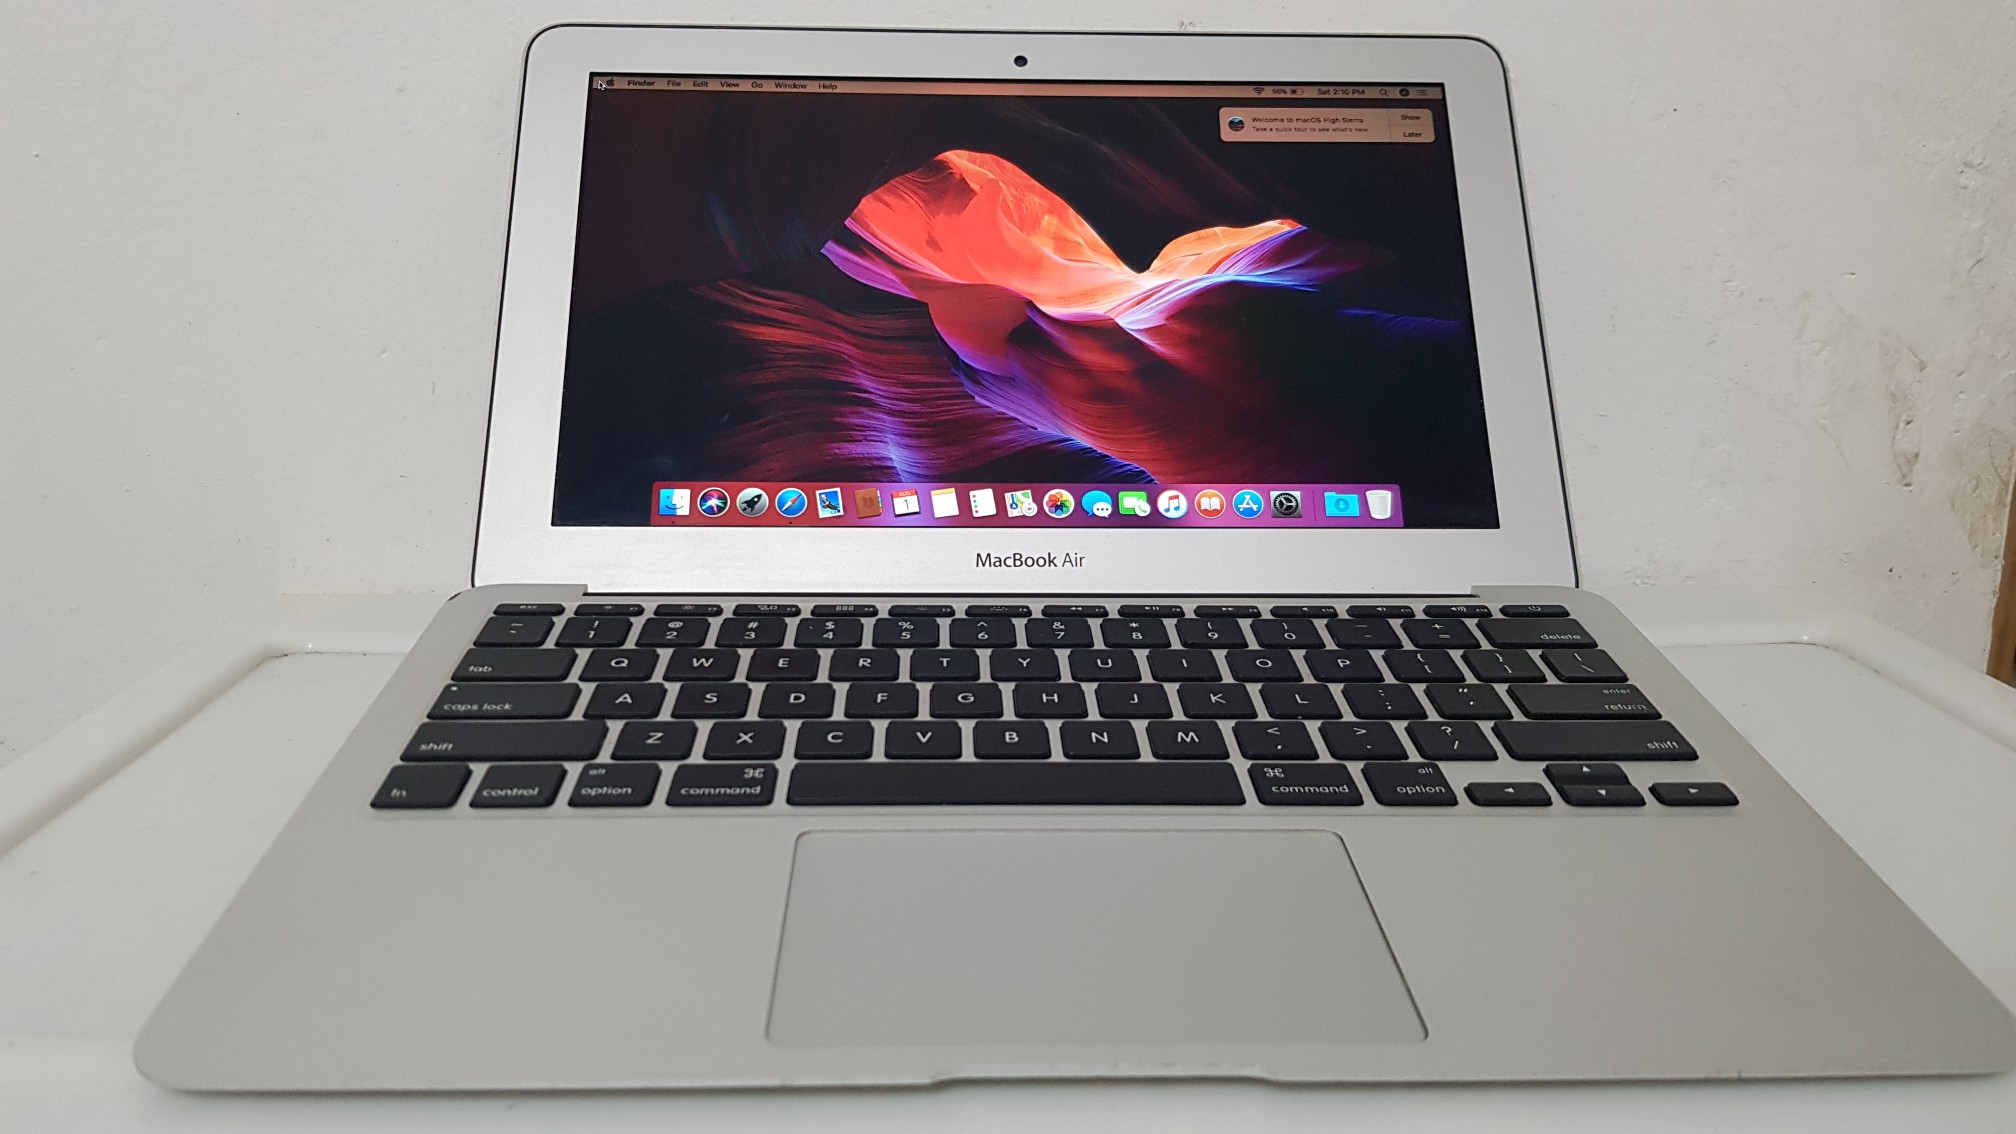 computadoras y laptops - Macbook Air 13.3 Pulg Core i5 Ram 4gb Disco 128gb Año 2015